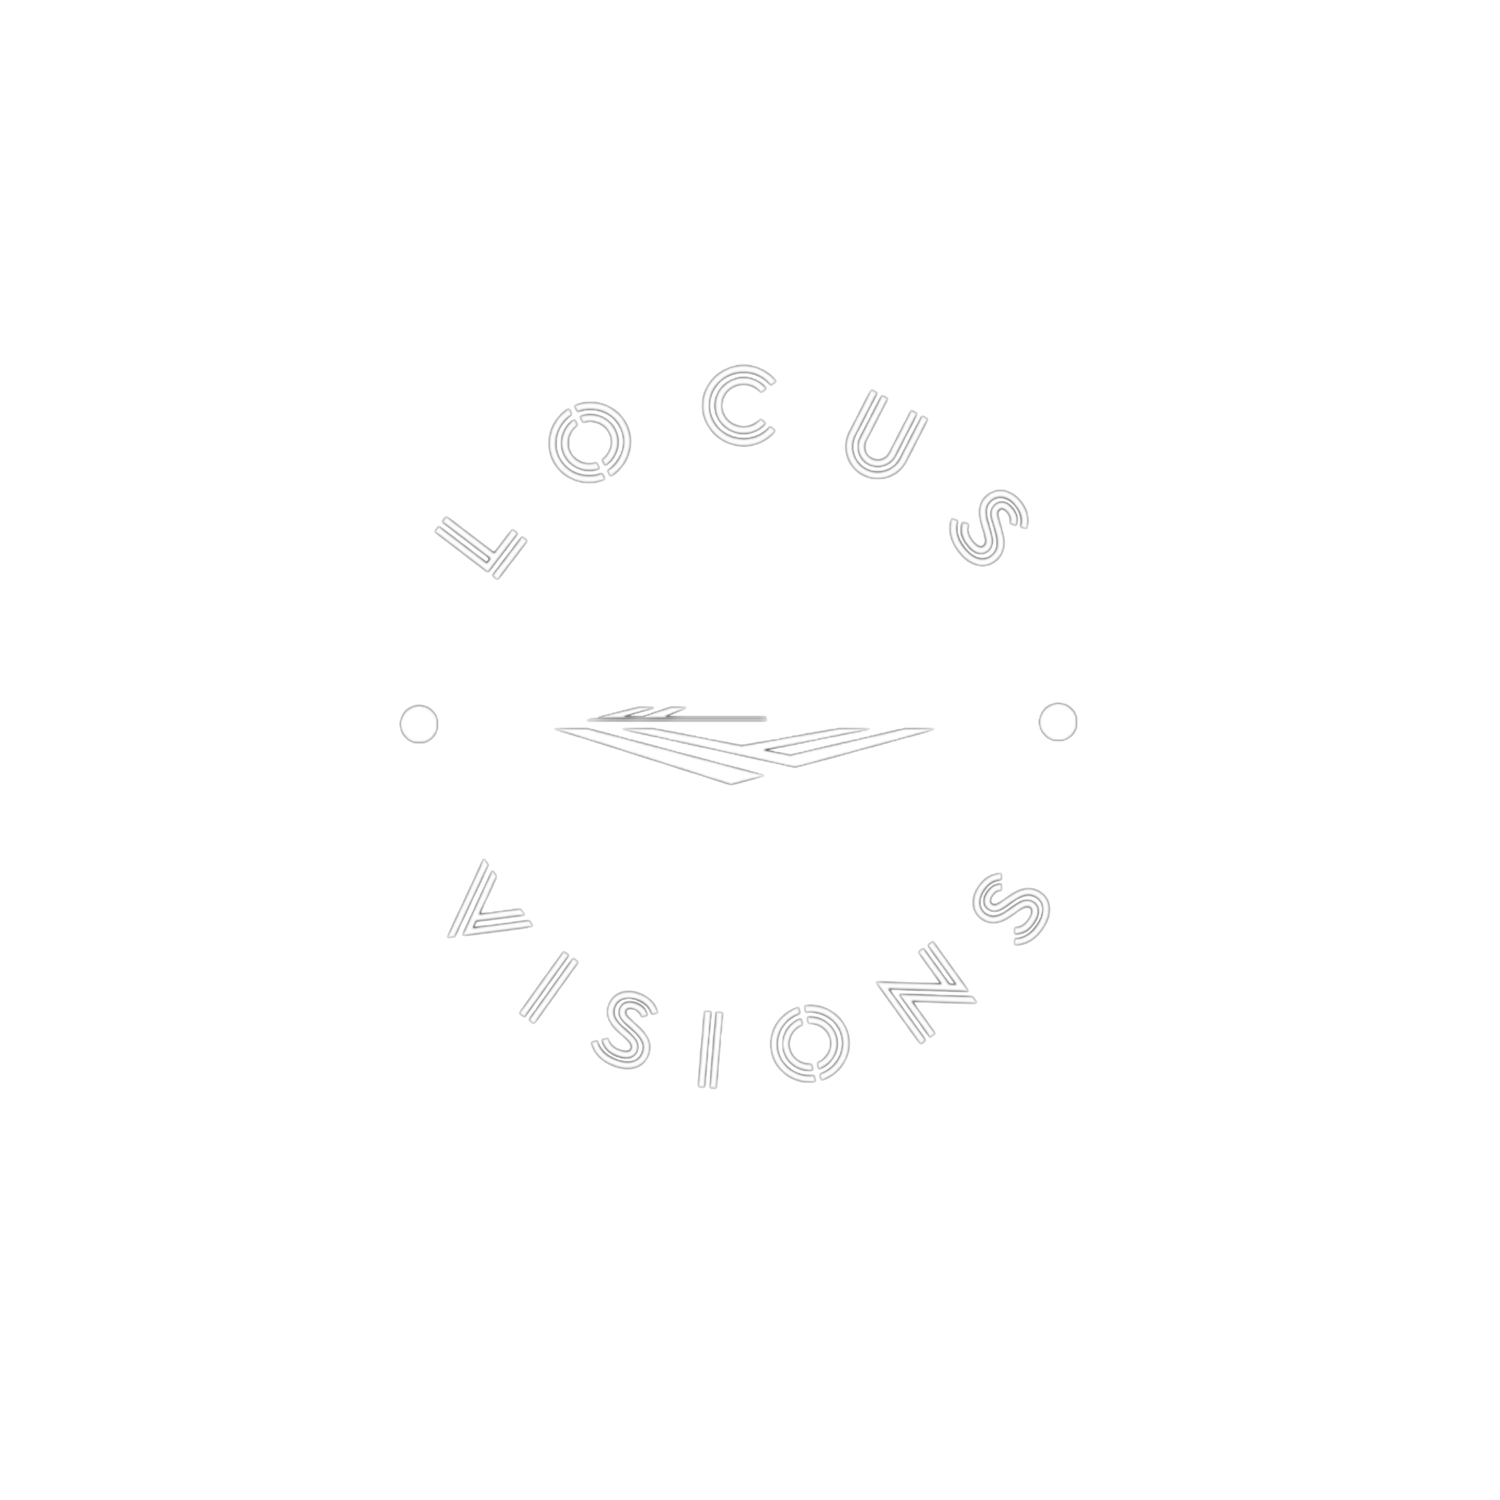 Locus Visions